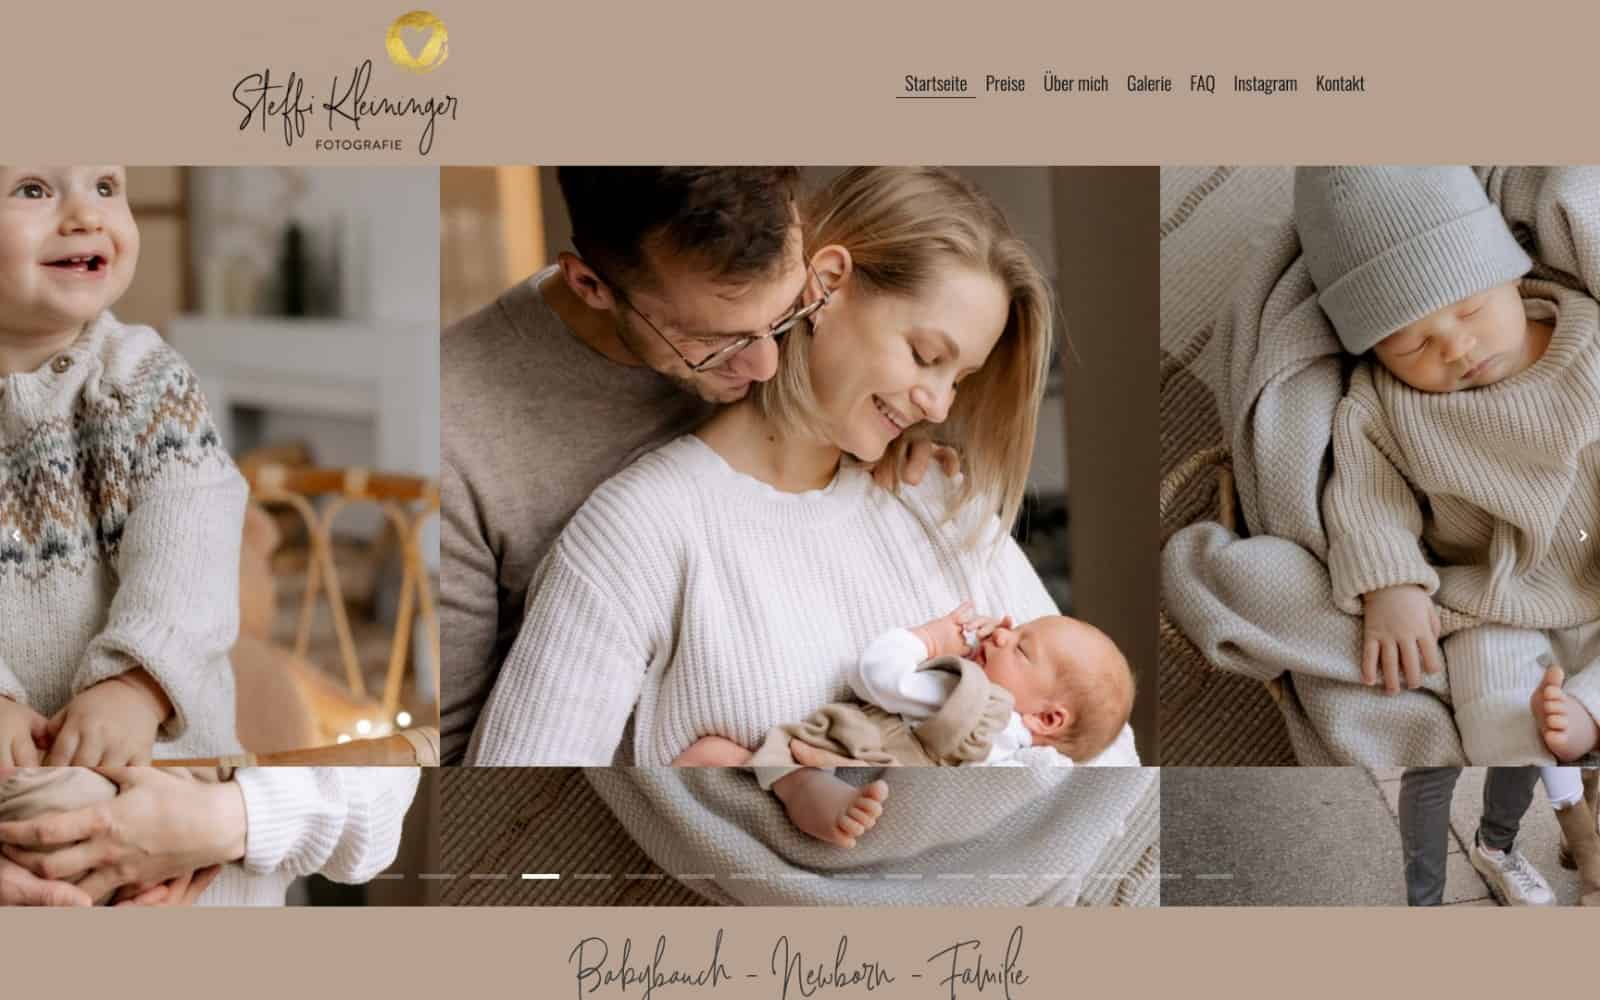 Ein herzerwärmendes Foto einer Familie, die ihr entzückendes Baby in den Armen hält, perfekt für Webdesign-Enthusiasten in Augsburg.